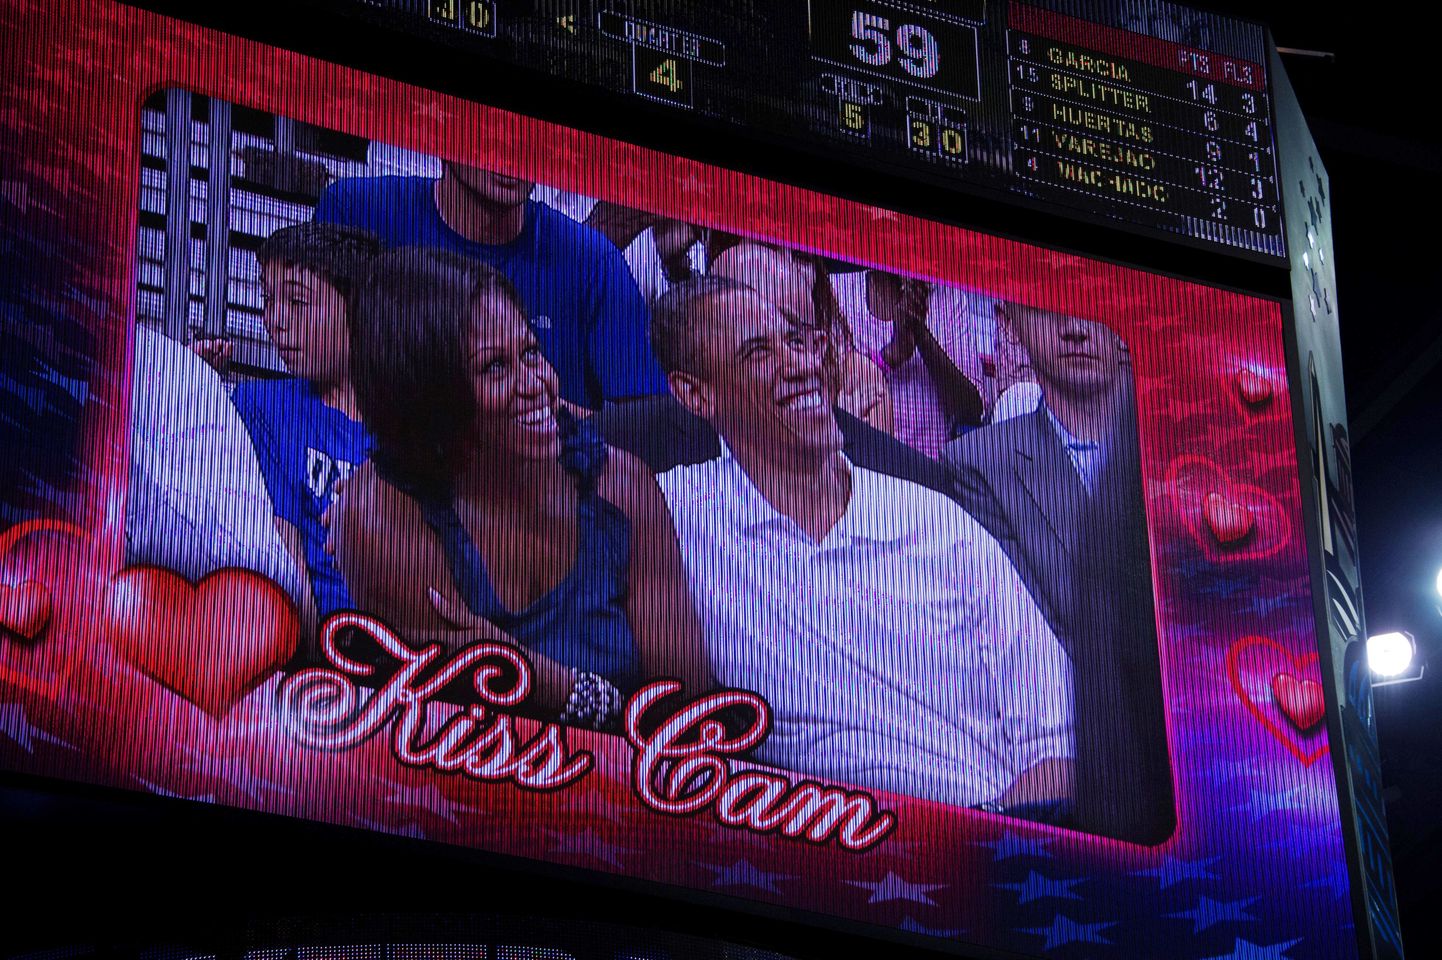 Барак Обама с супругой Мишель на большом табло.